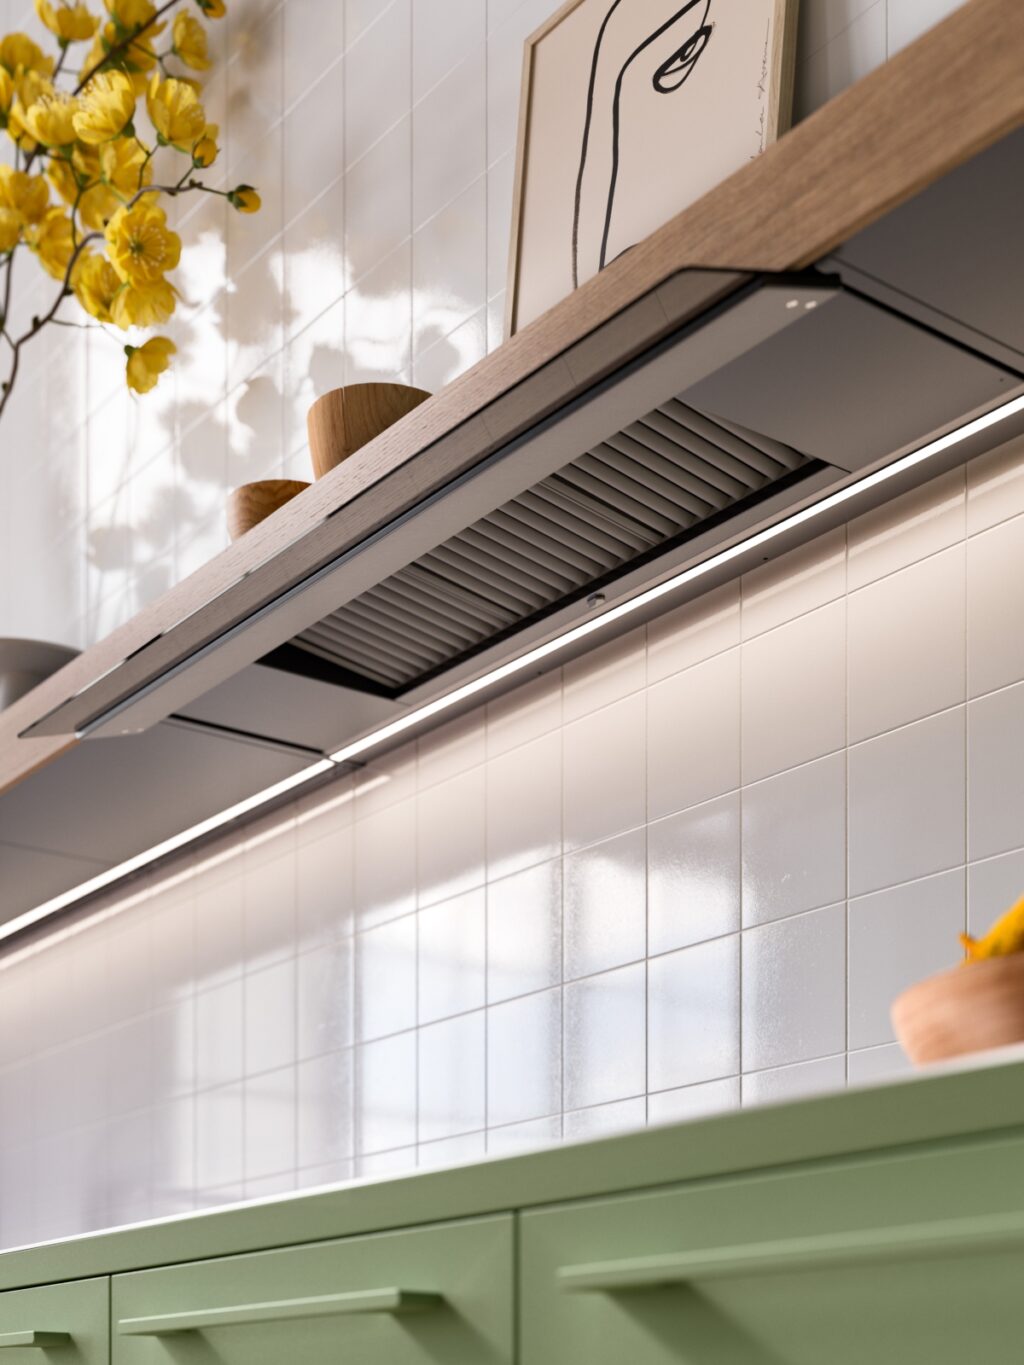 Una estantería que transforma la ventilación y el mobiliario de la cocina Falmec Shelf